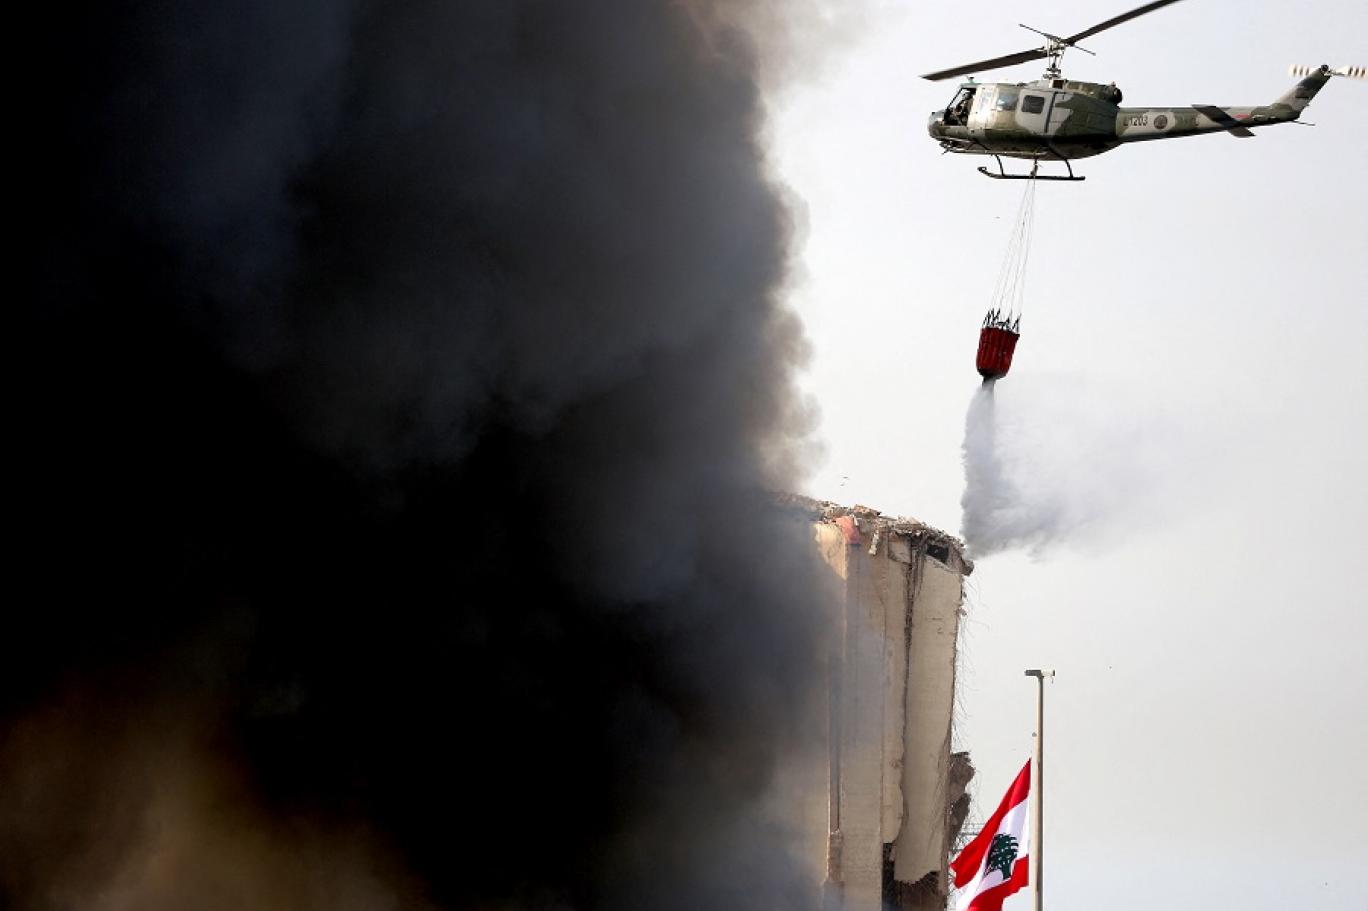 ما الأسباب التي دفعت الجيش اللبناني إلى بيع طائرات عسكرية؟